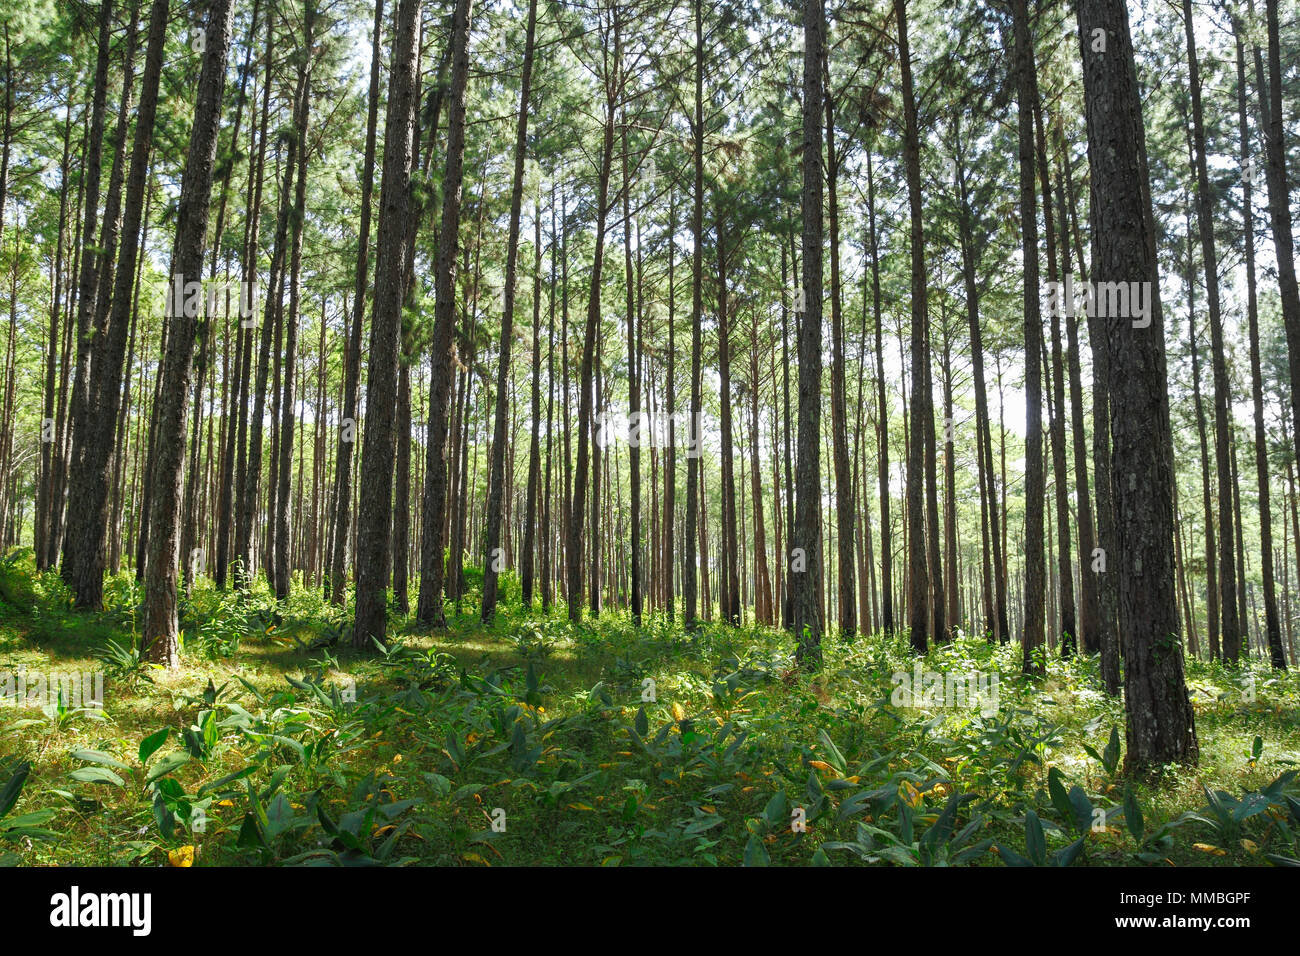 Cubierta de bosque de pino con jengibre (familia Zingiberaceae) planta sobre el terreno. Tomada desde el sudeste de Asia. Foto de stock